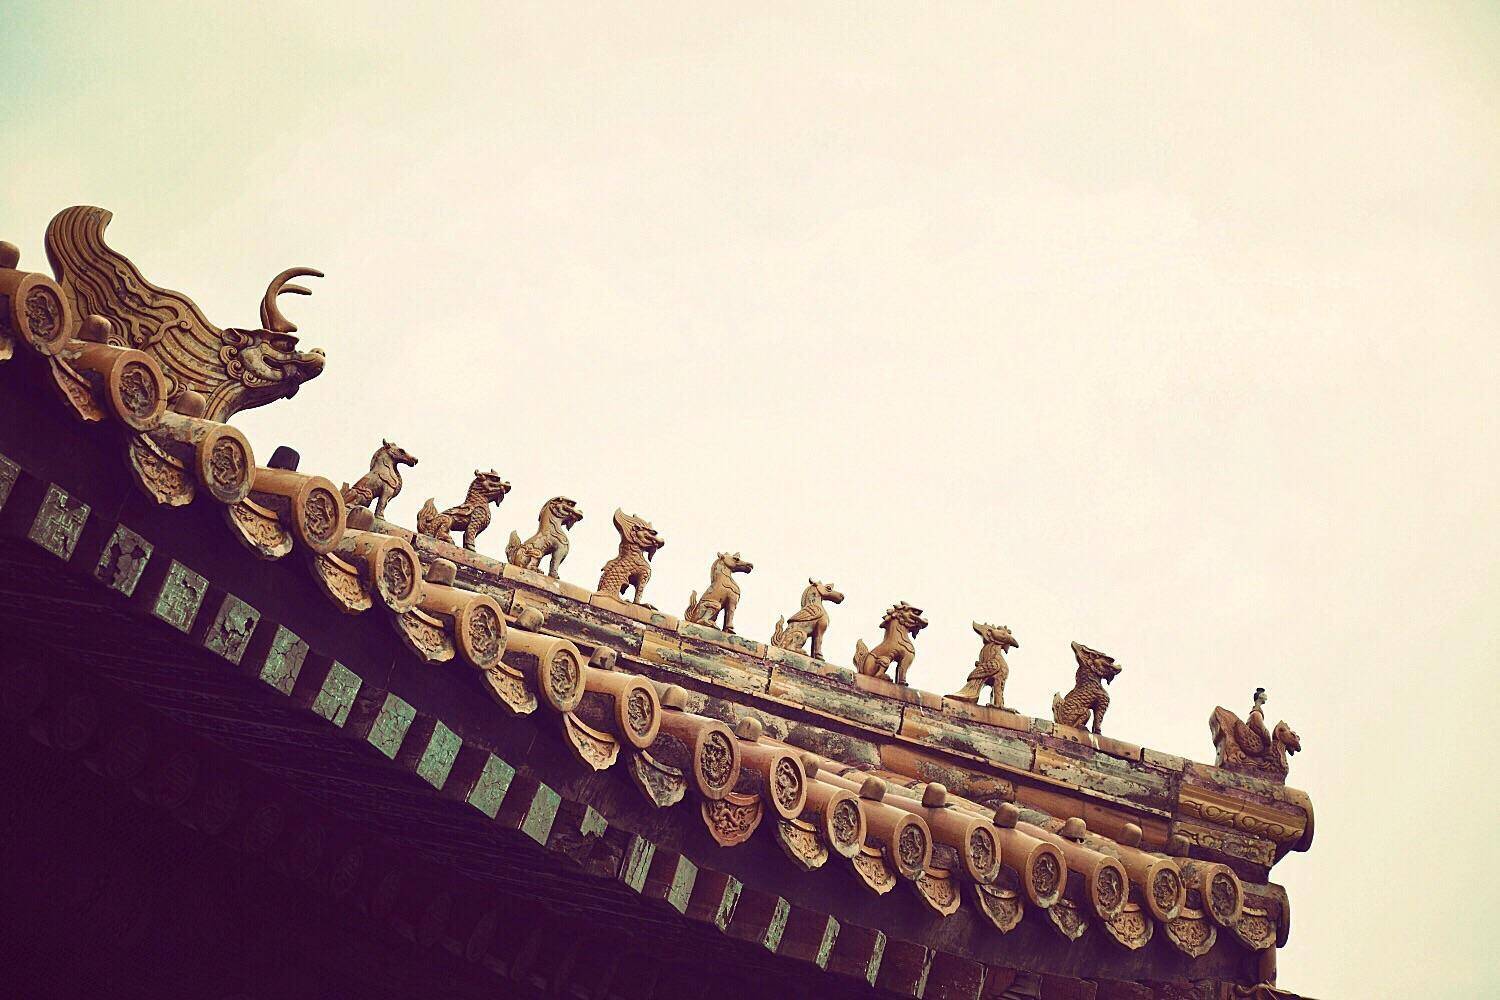 包括故宫,很多古建筑的飞檐翘角上不是有很多琉璃釉面小兽吗,有龙,凤